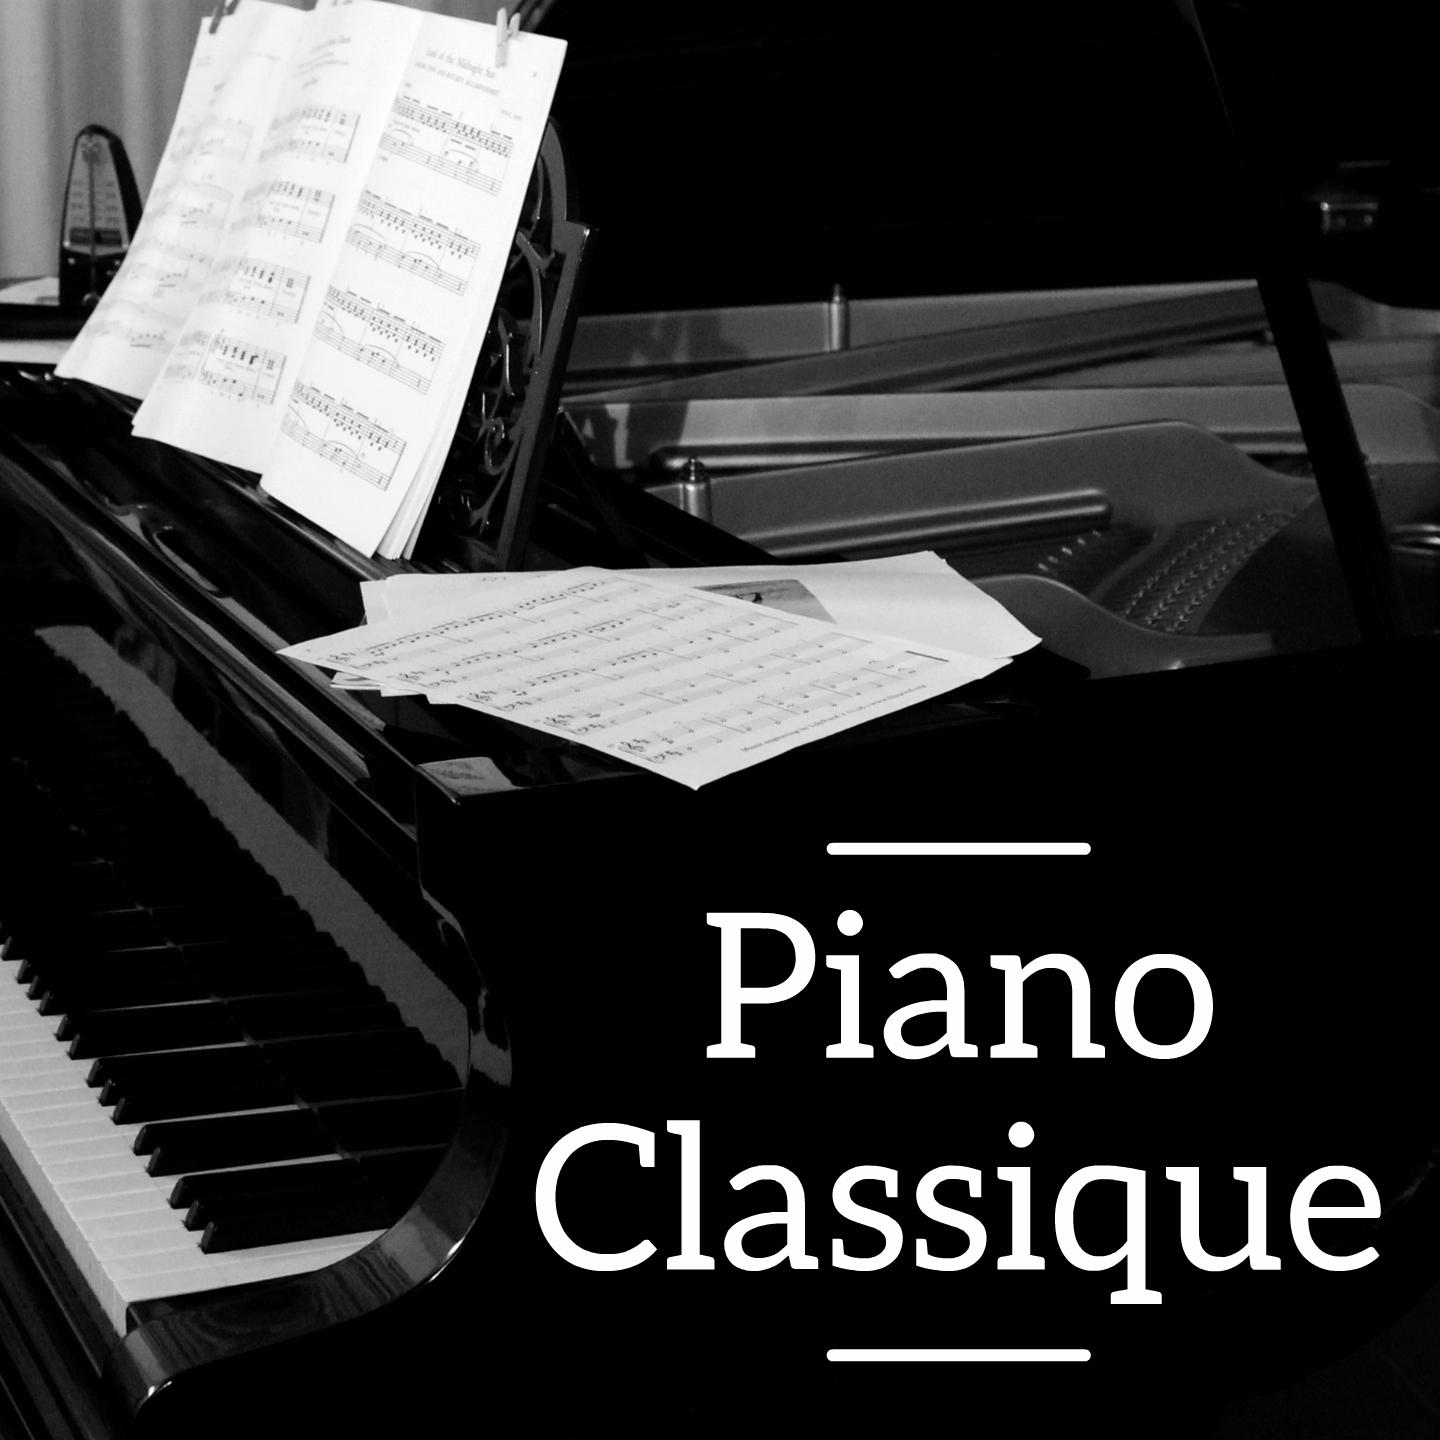 Piano Sonata No. 10 in C Major, K. 330: III. Allegretto